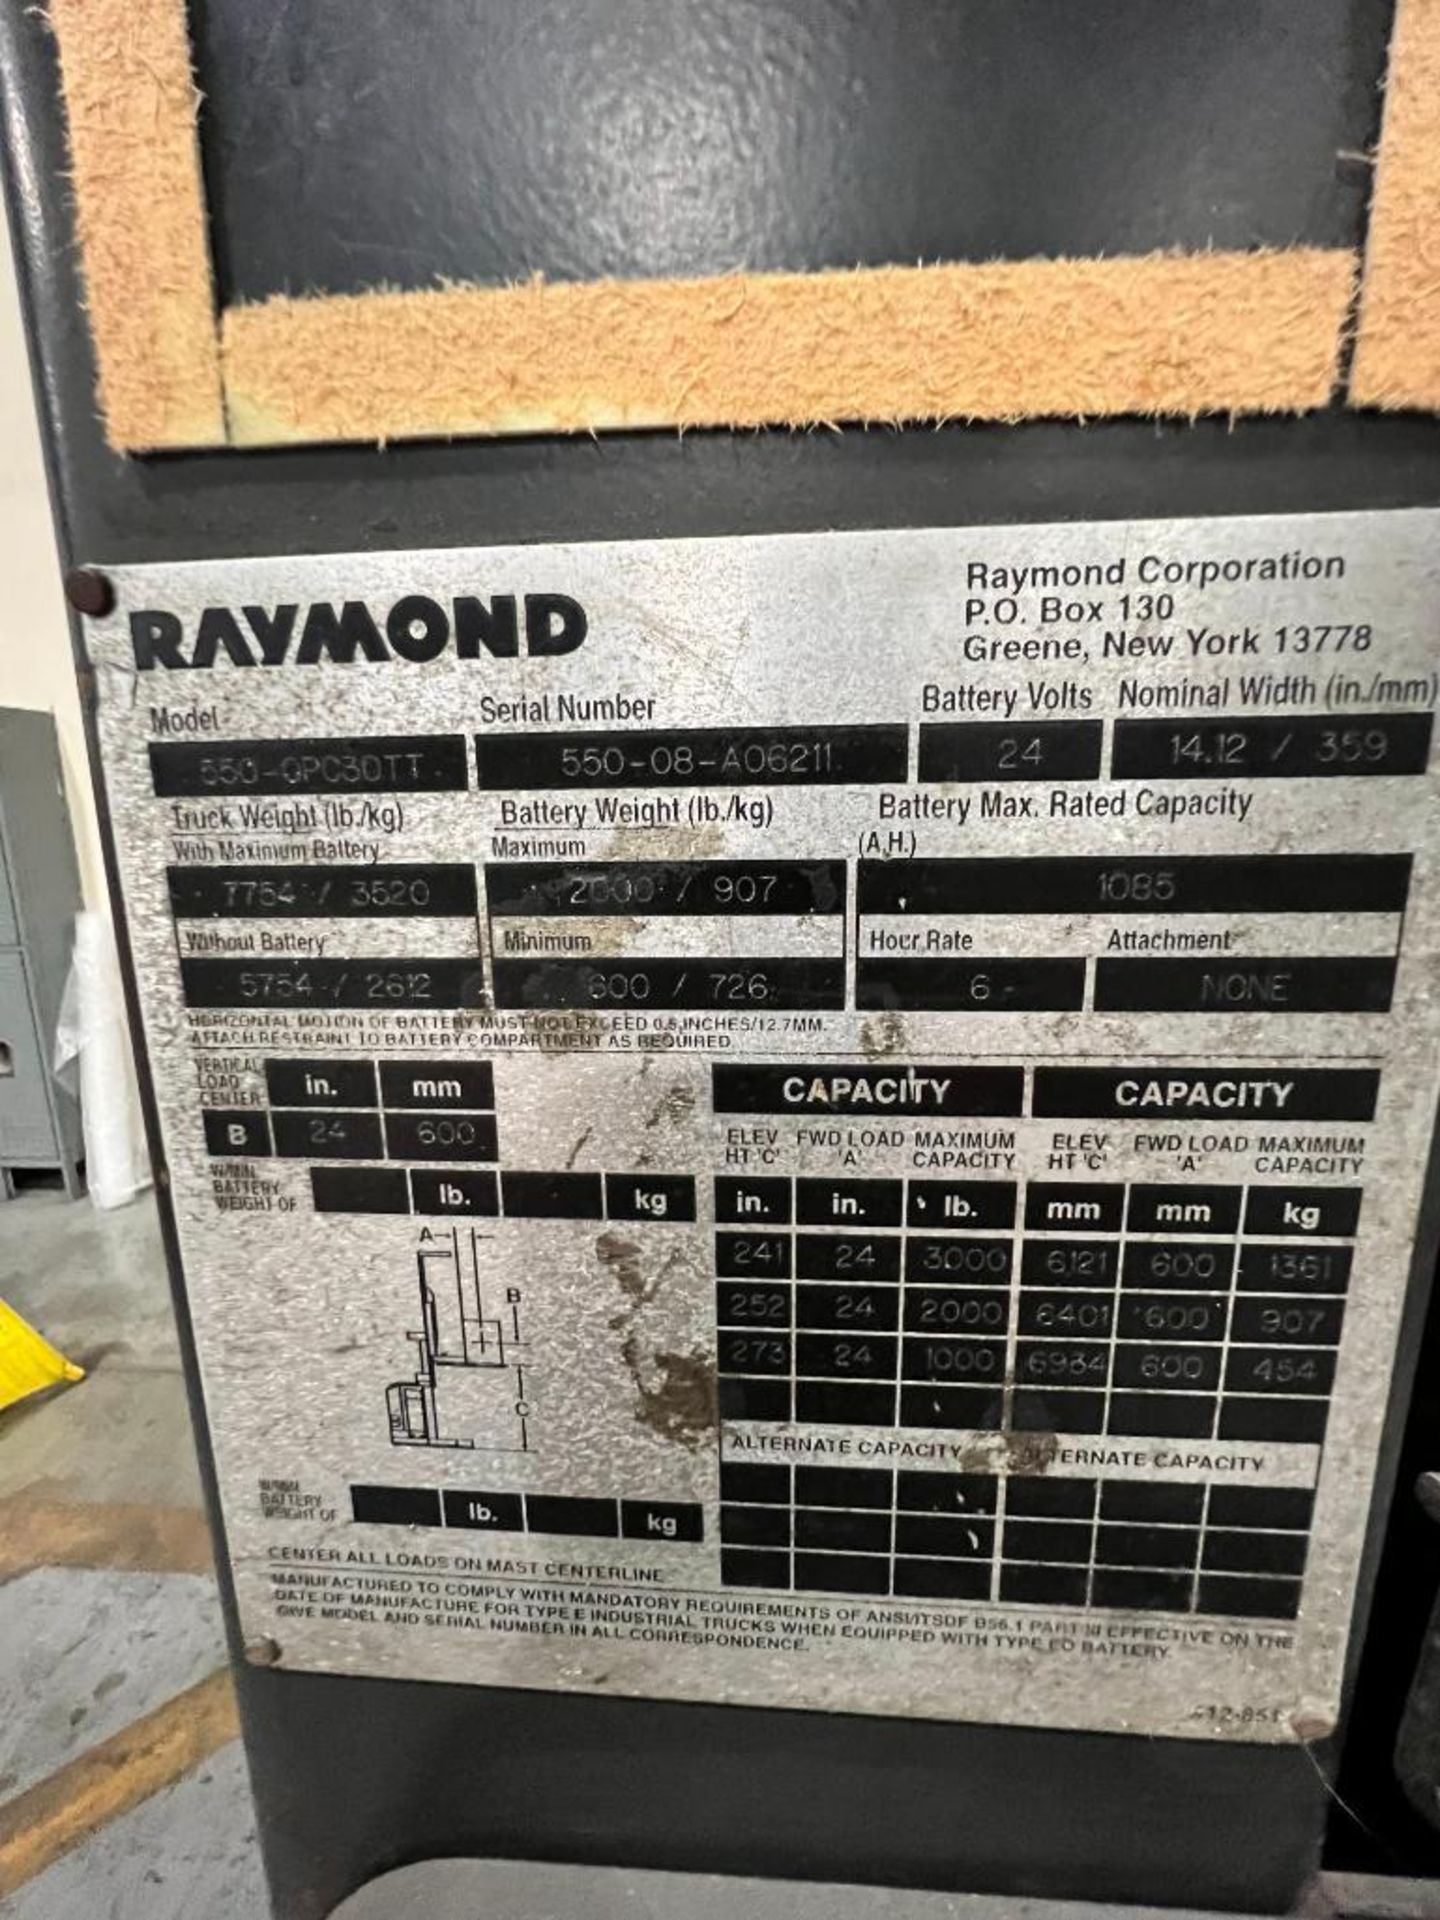 Raymond 3,000 LB. Order Picker, Model 550-OPC30TT, S/N 550-08-A06211, HD Hours 10,895 ***Buyer is Re - Image 4 of 5